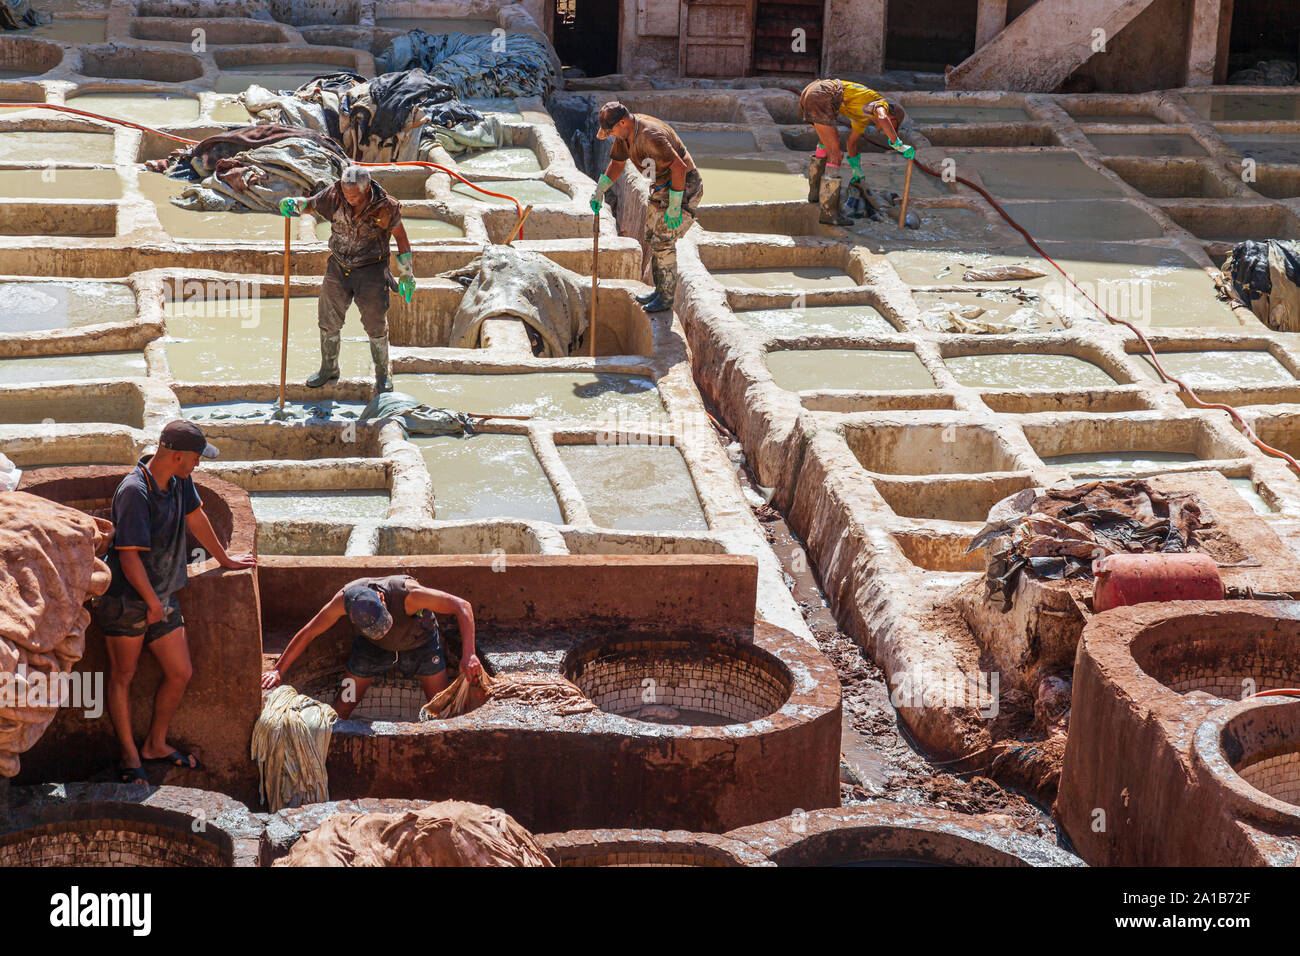 Tannerie Chouara des travailleurs à l'un des trois tanneries dans la ville de Fès, Maroc. Construite au 11e siècle, c'est la plus grande tannerie dans la ville. Banque D'Images